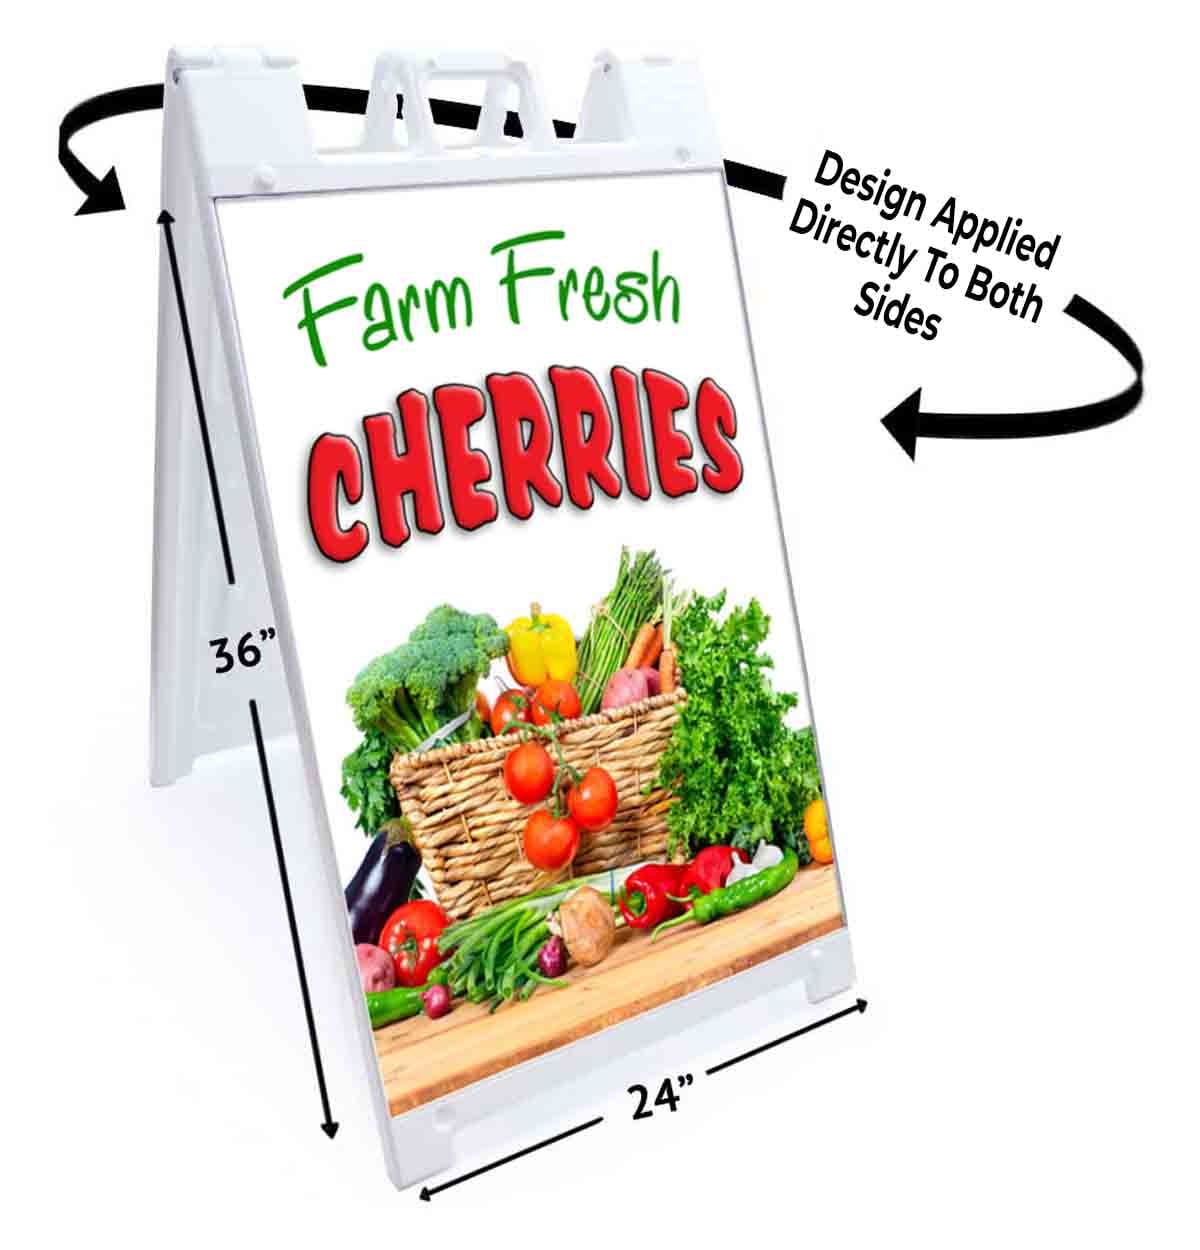 FARM FRESH CHERRIES Advertising Vinyl Banner Flag Sign Many Sizes Available 